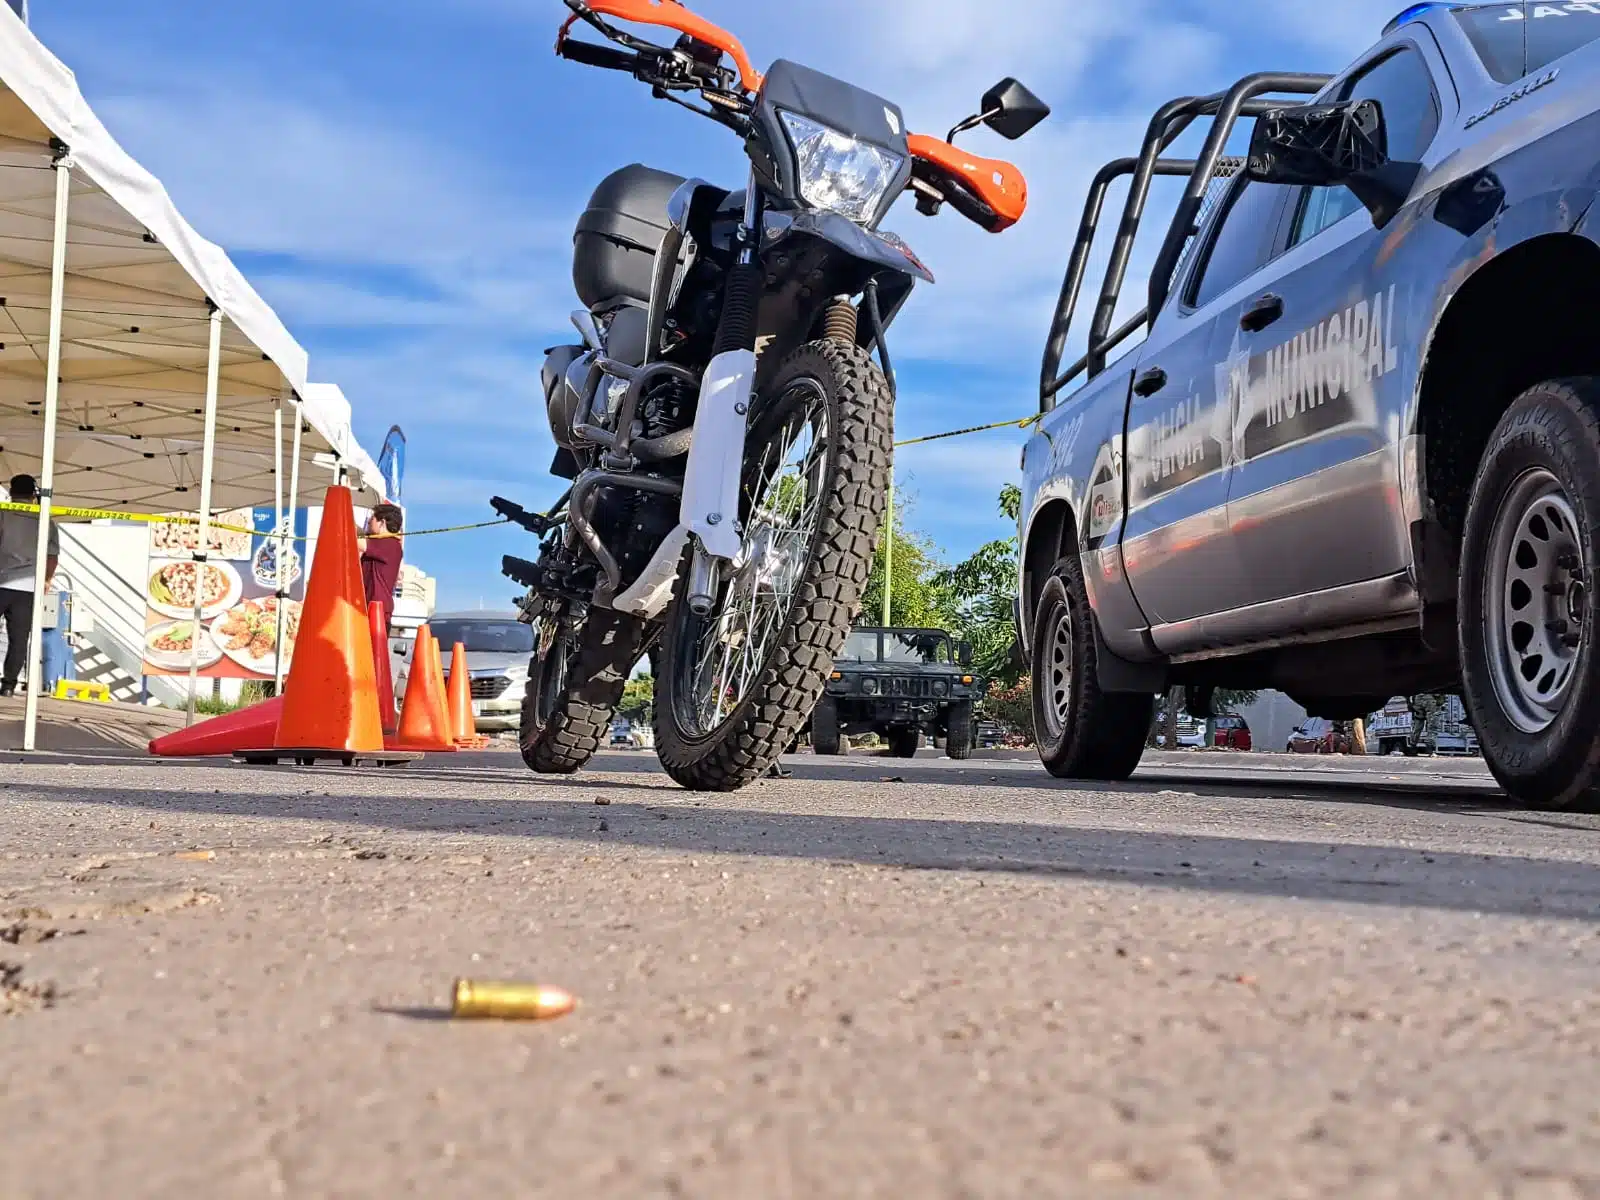 Patrulla de la Policía Municipal de Culiacán, una motocicleta y cinta amarilla delimitando el área del restaurante donde murió Abel